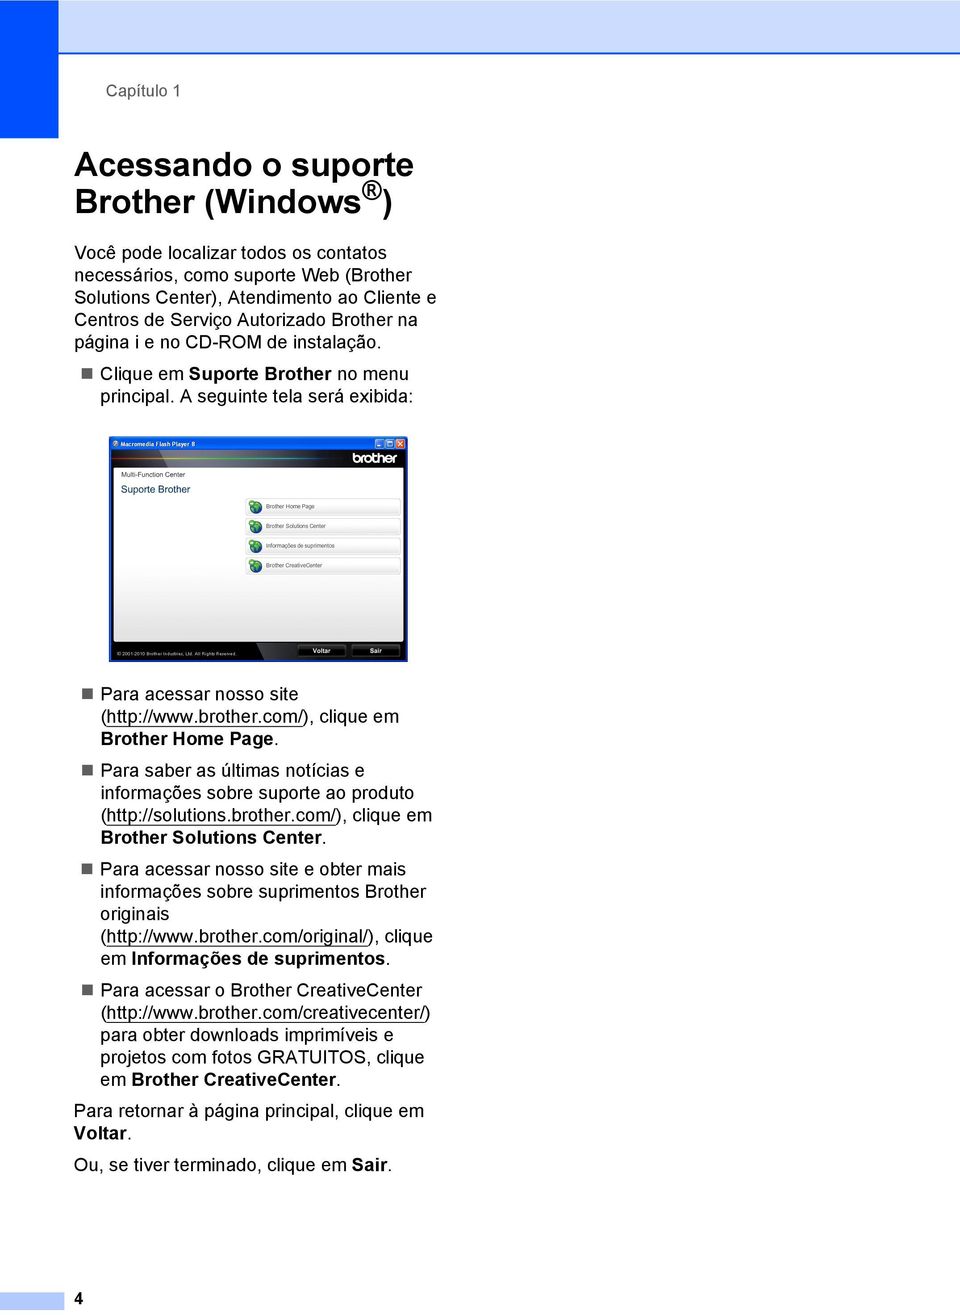 com/), clique em Brother Home Page. Para saber as últimas notícias e informações sobre suporte ao produto (http://solutions.brother.com/), clique em Brother Solutions Center.